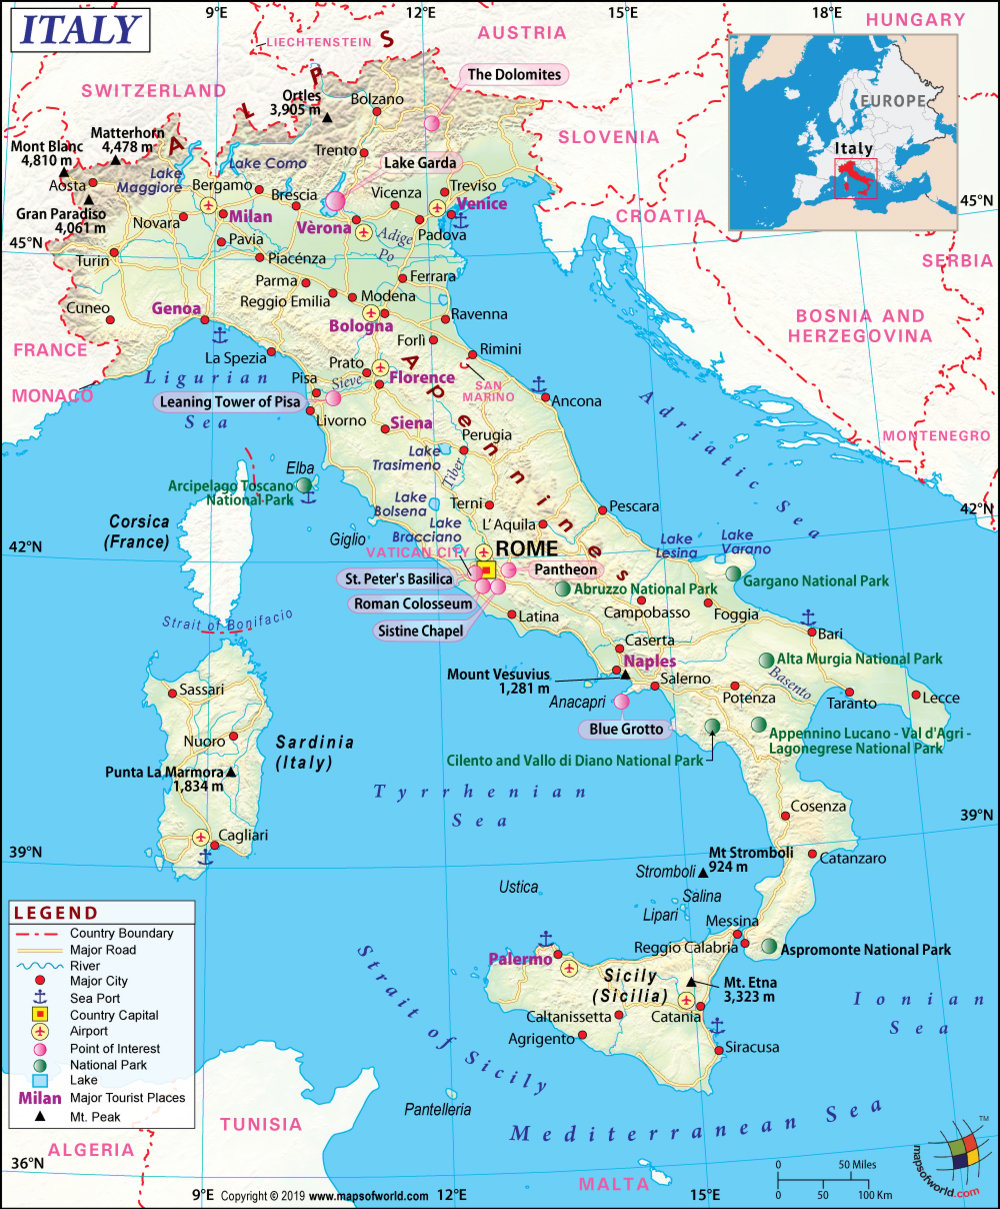 pompeii italy map